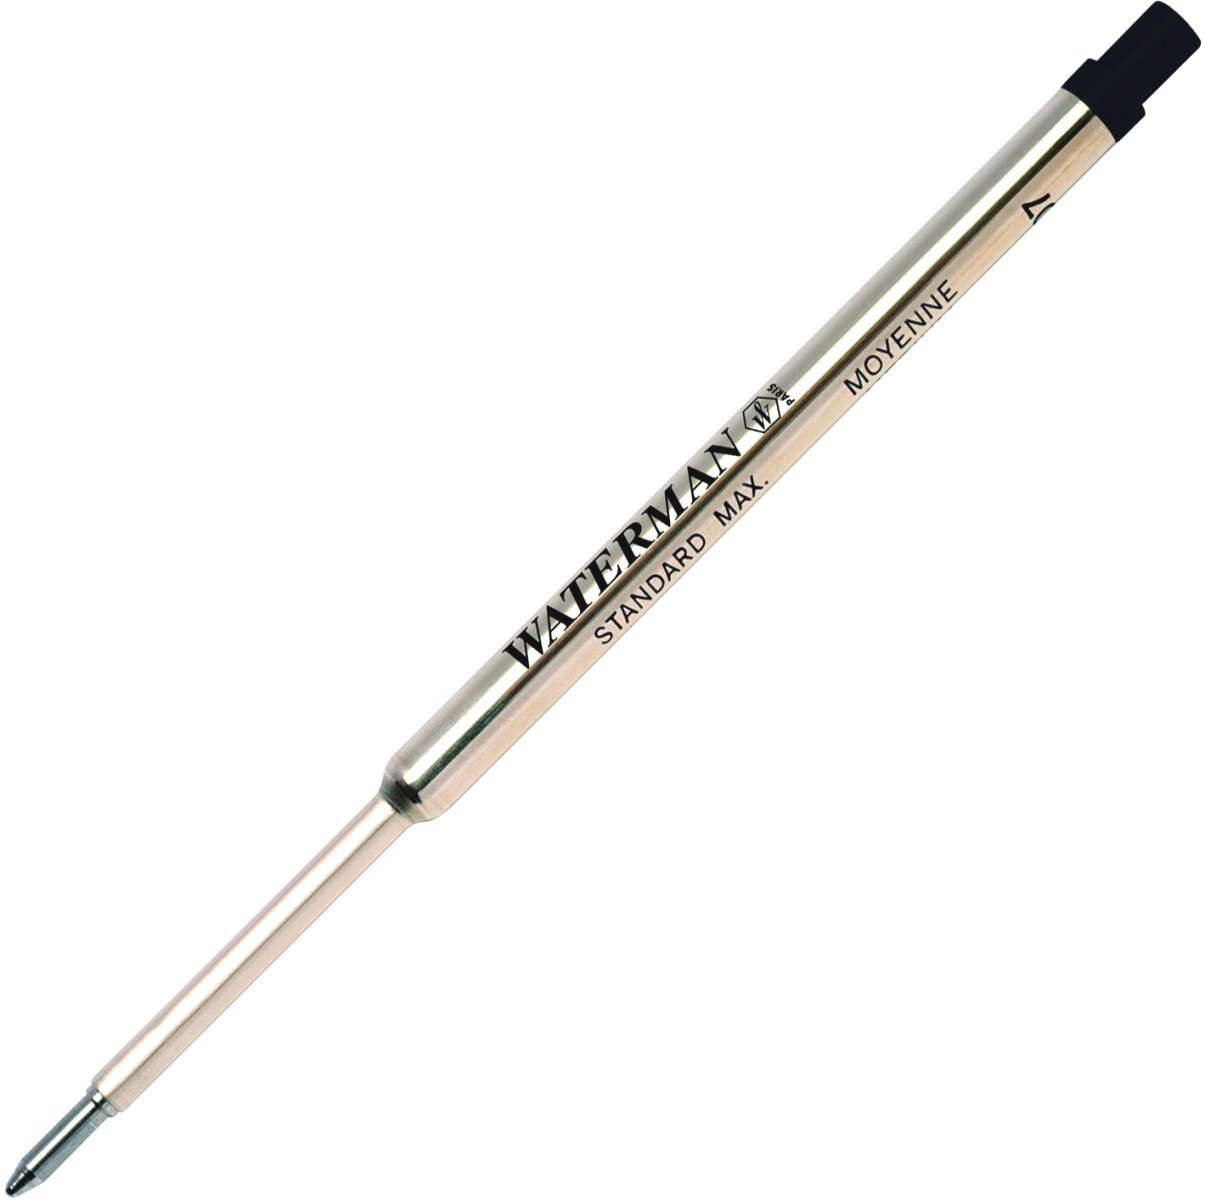  Черный стержень для шариковой ручки Waterman Refill BP Standard Maxima (F - 0.8мм), фото 2